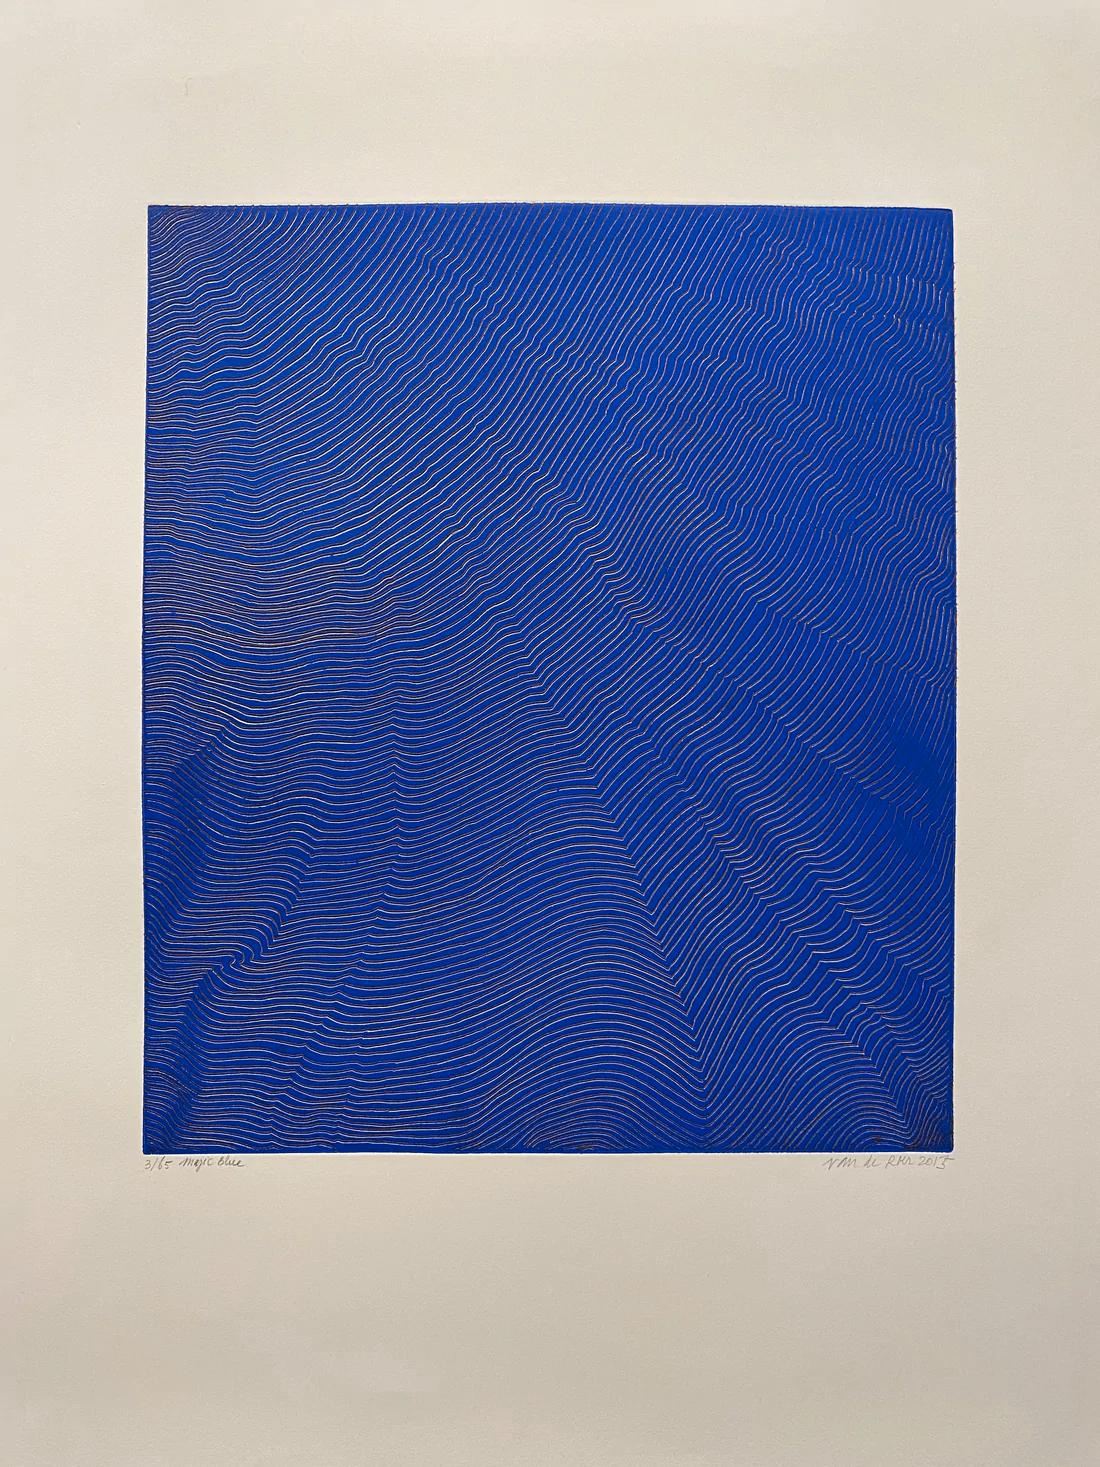 Magic Blue by Michele van de Roer, 2015 - Print by Michele Van De Roer